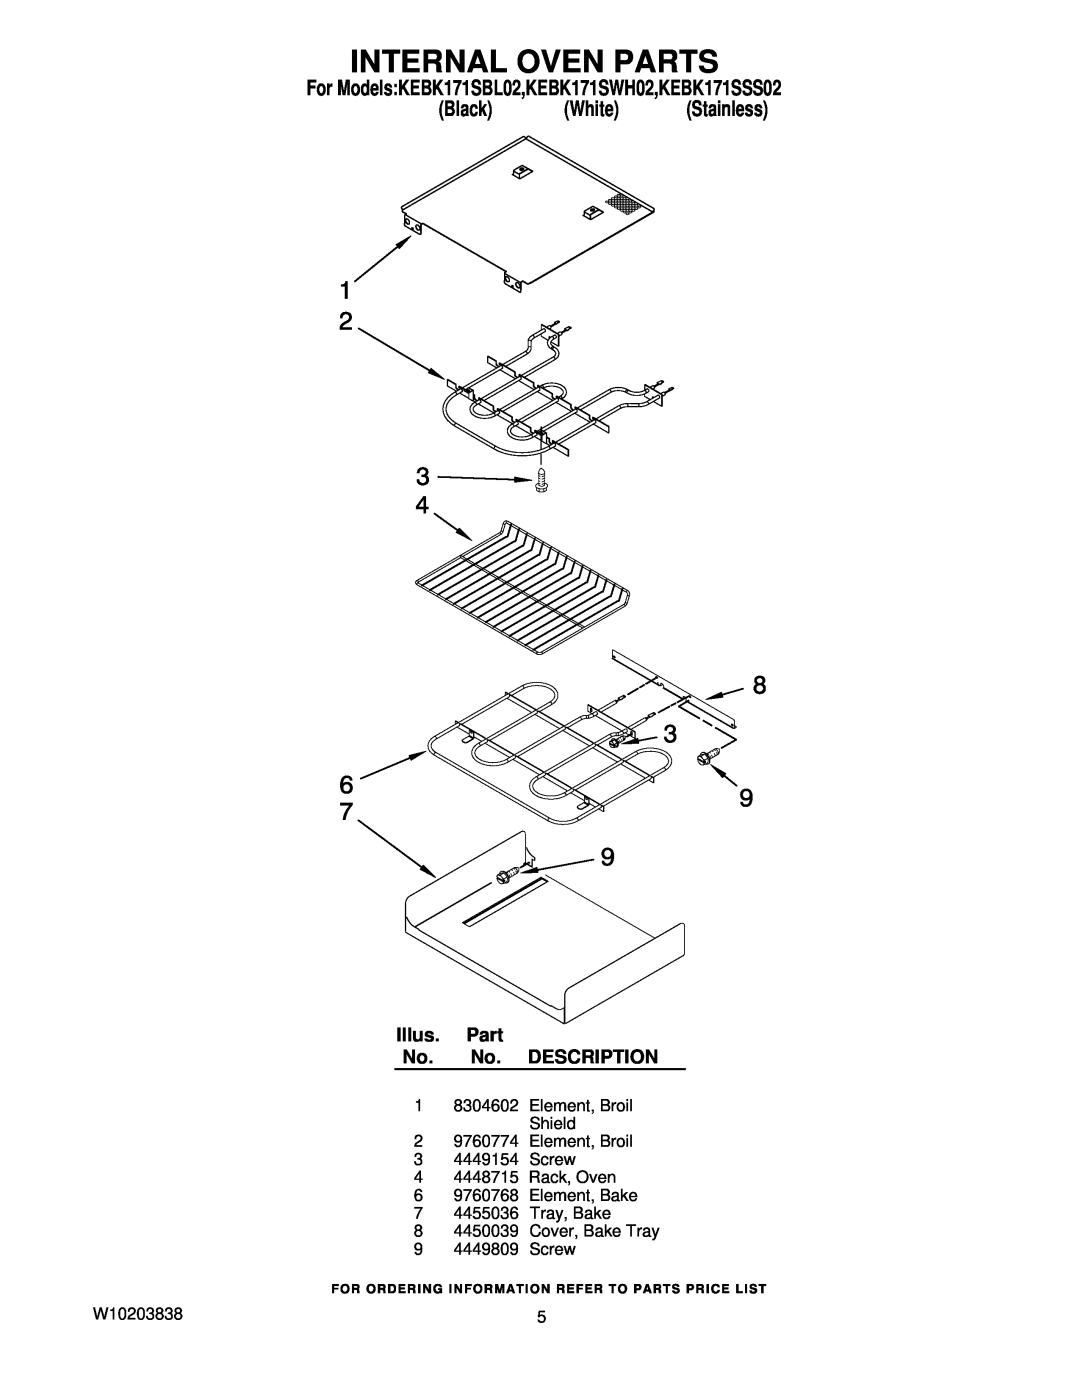 KitchenAid manual Internal Oven Parts, For ModelsKEBK171SBL02,KEBK171SWH02,KEBK171SSS02, Black White Stainless 